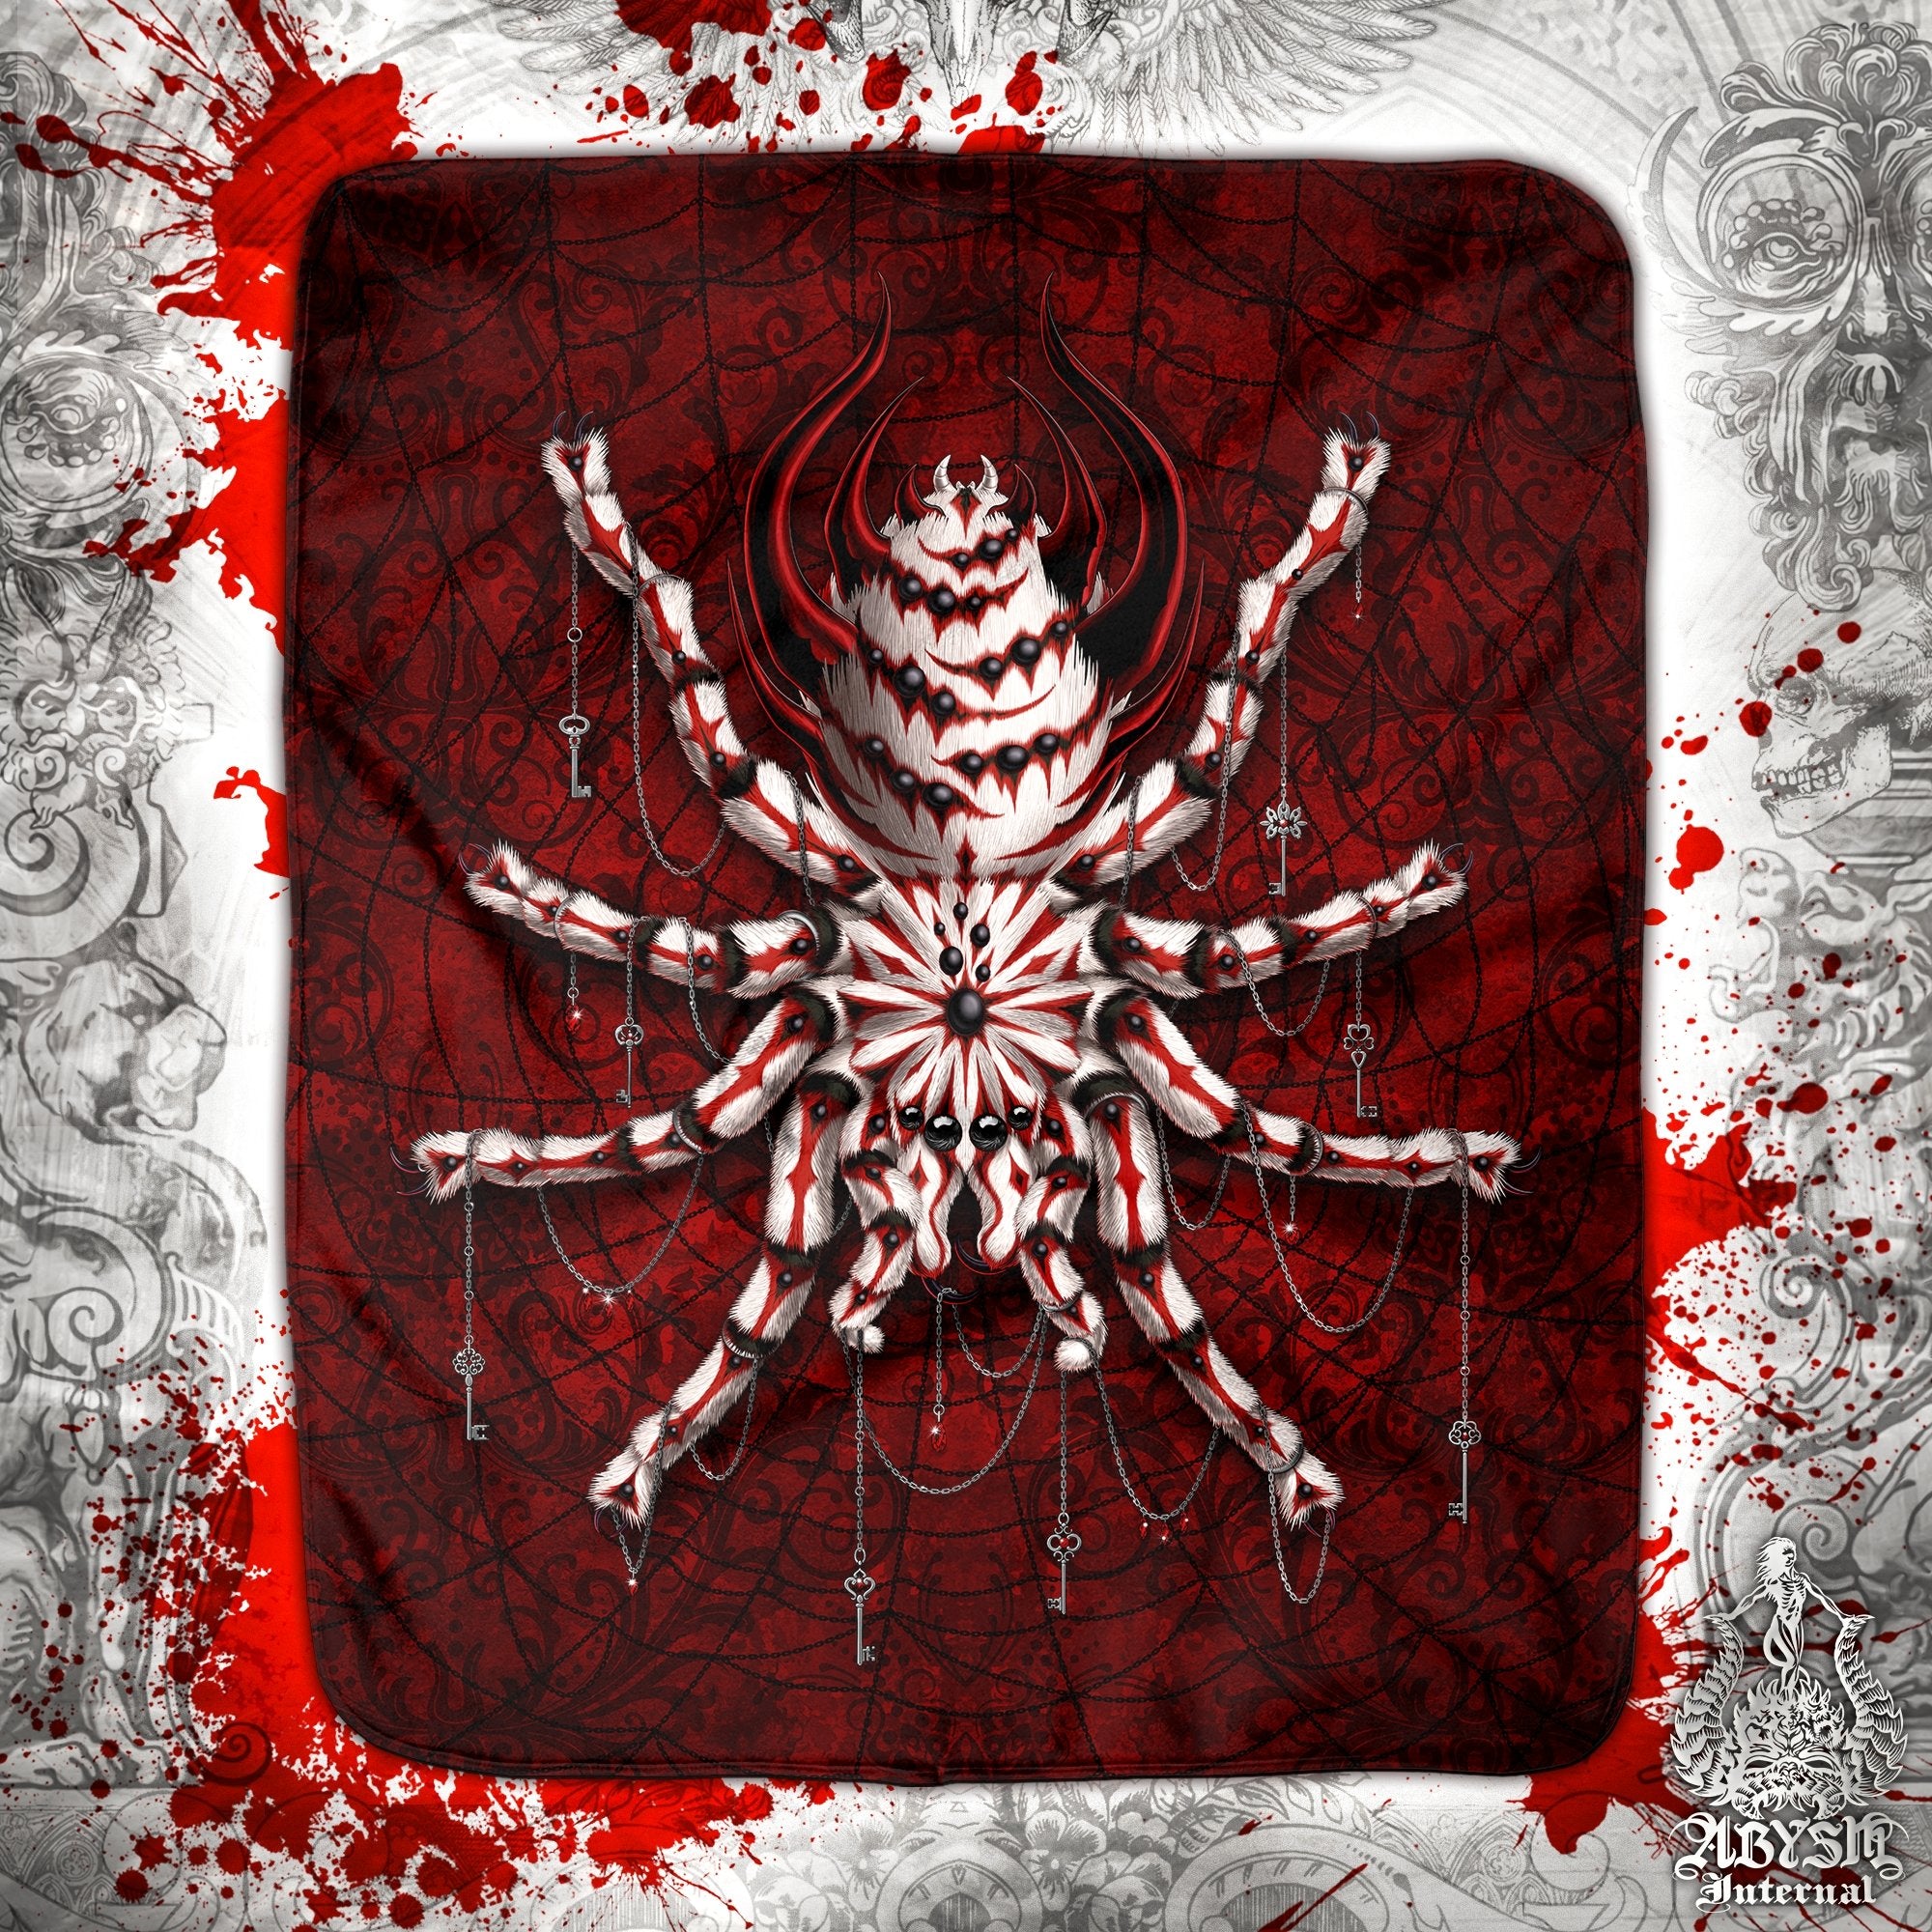 Spider Throw Fleece Blanket, Dark Gift, Goth Home Decor, Alternative Art Gift - Bloody Red Gothic, White, Tarantula Art - Abysm Internal